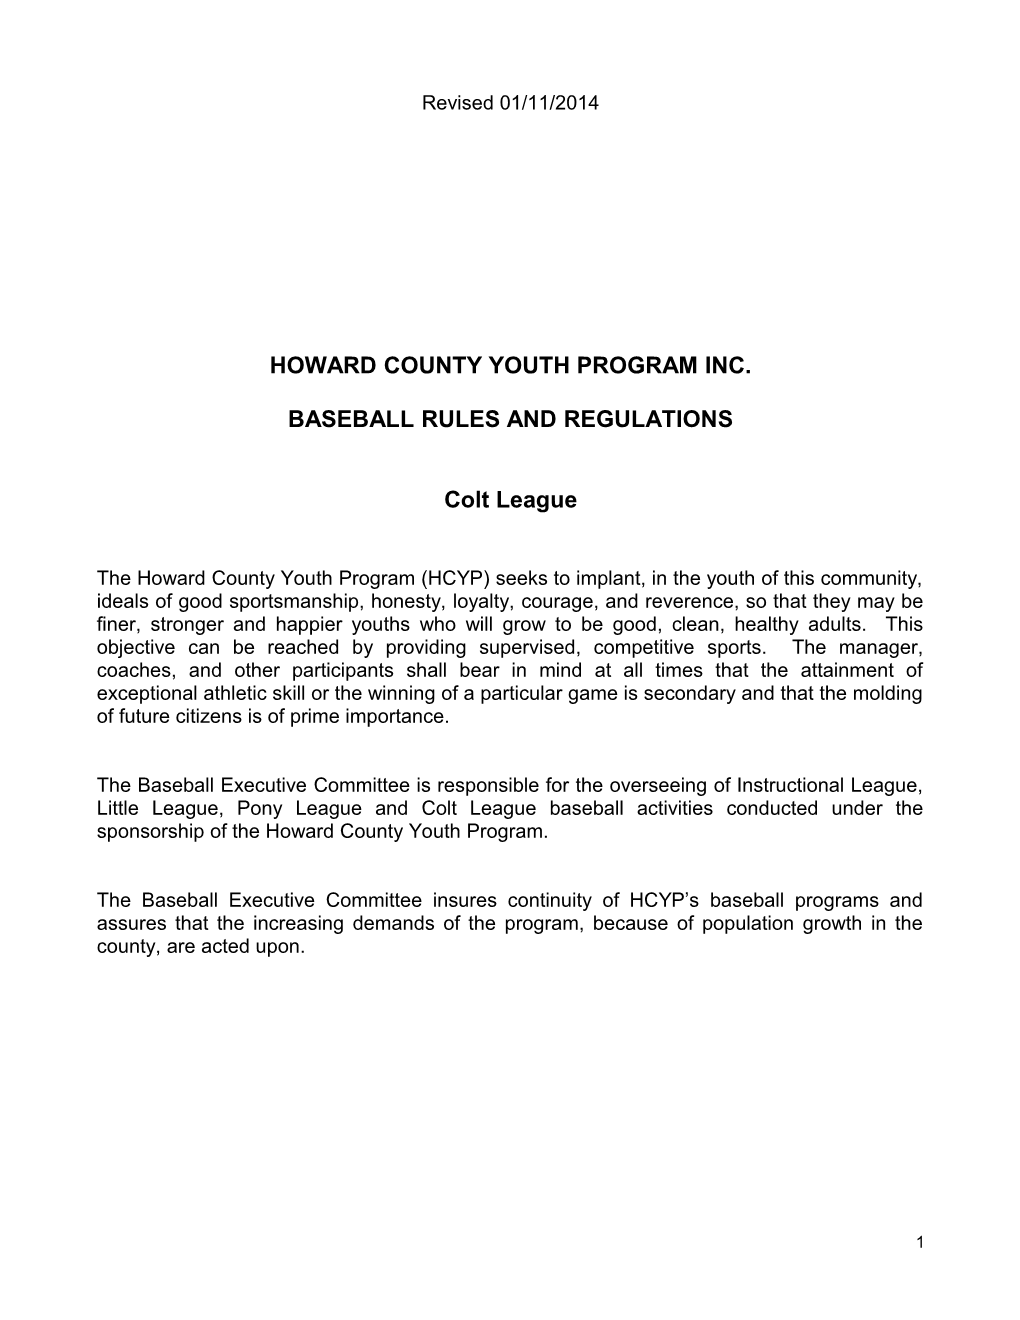 Howard County Youth Program Inc